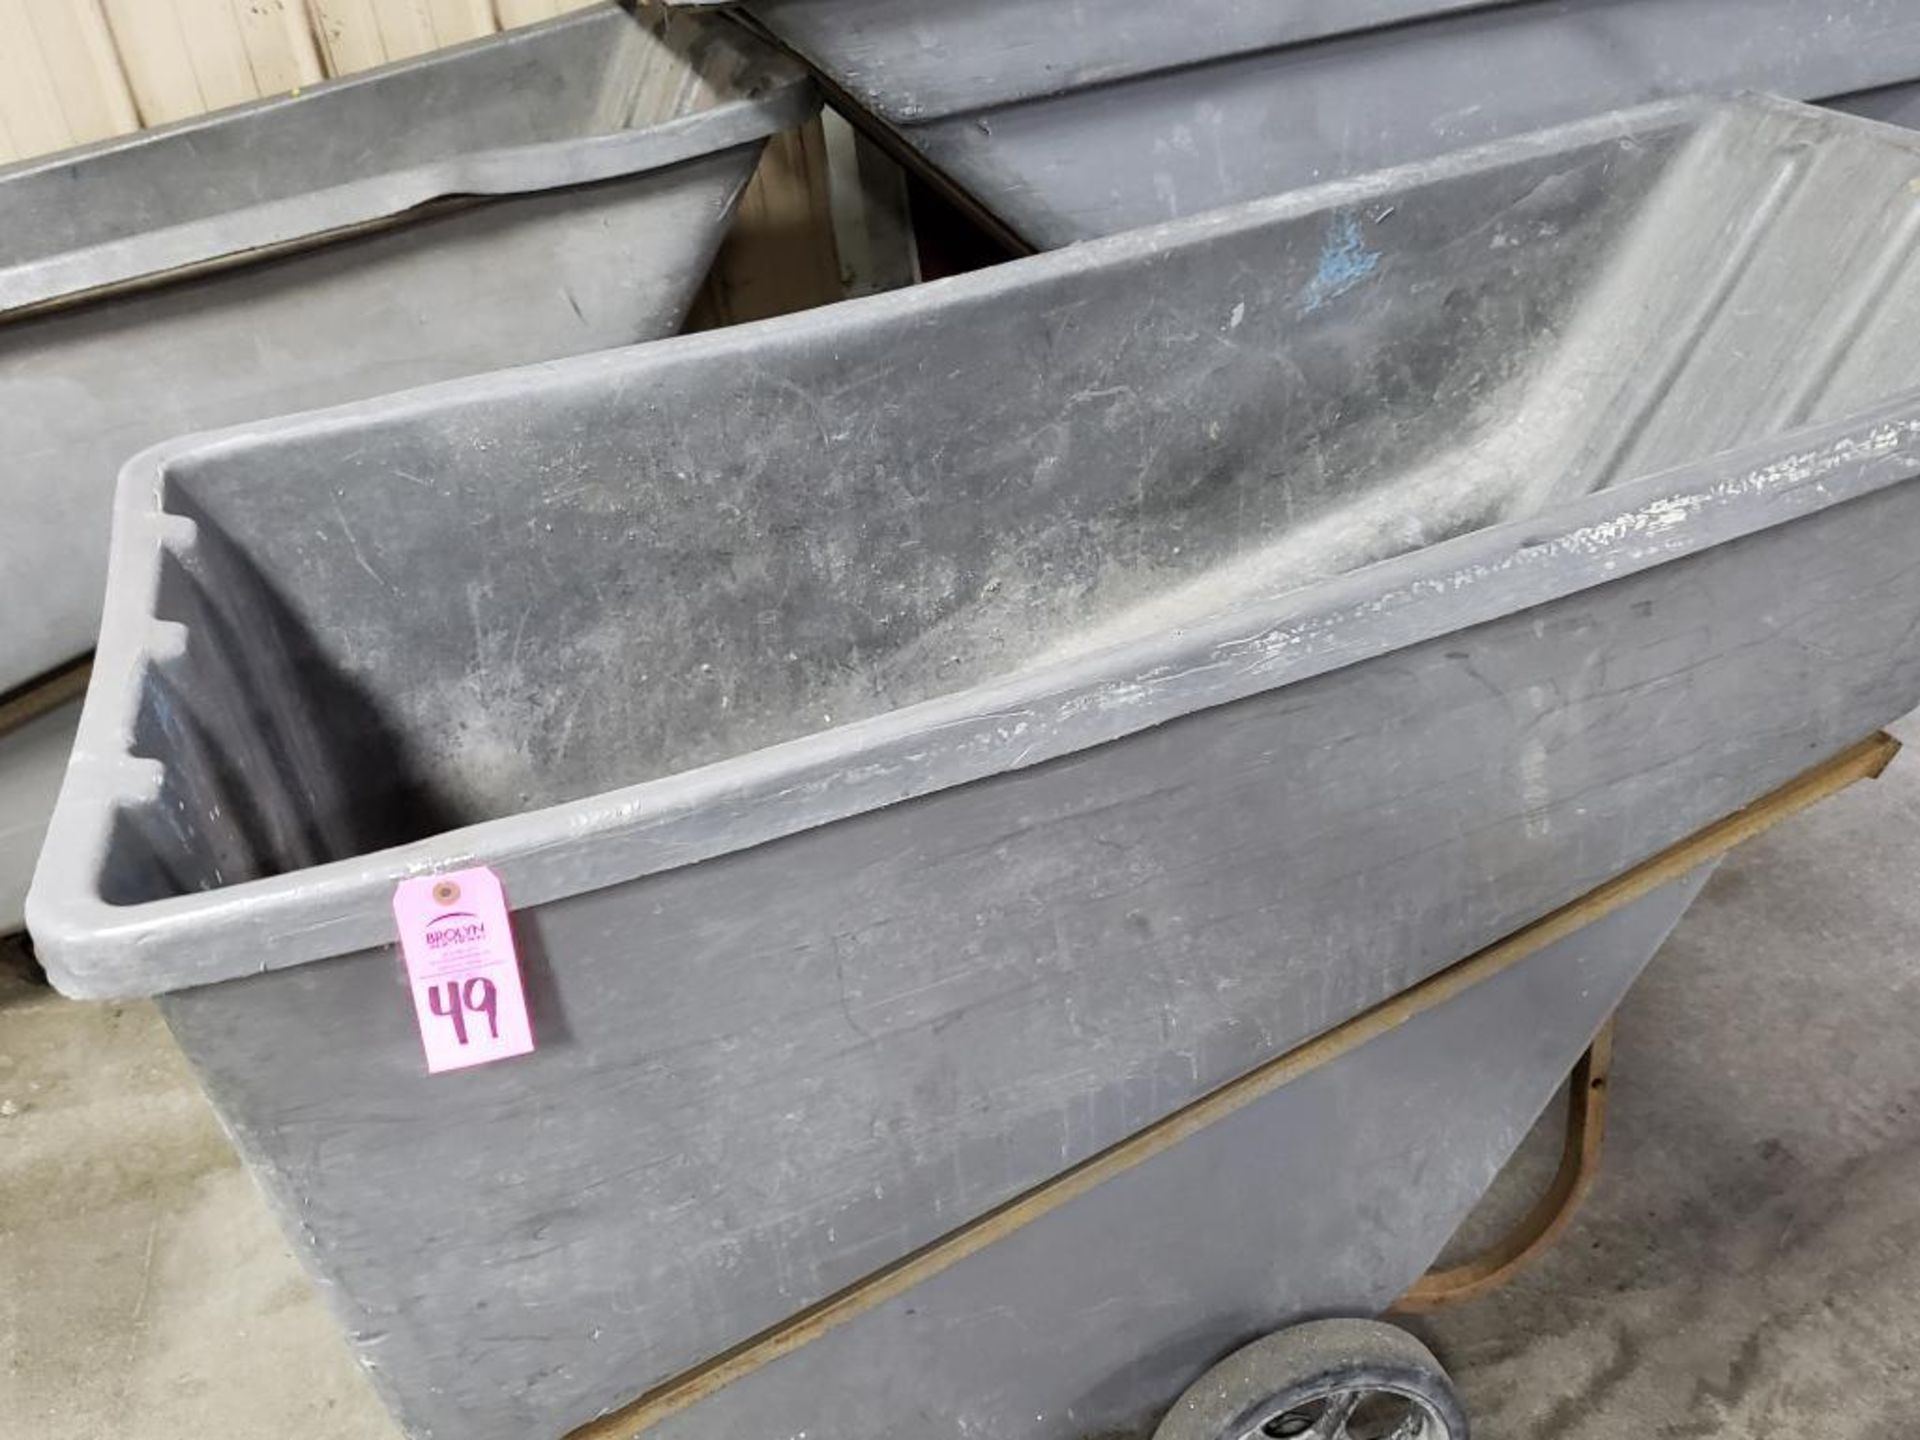 Rubbermaid rolling trash bin. - Image 2 of 2